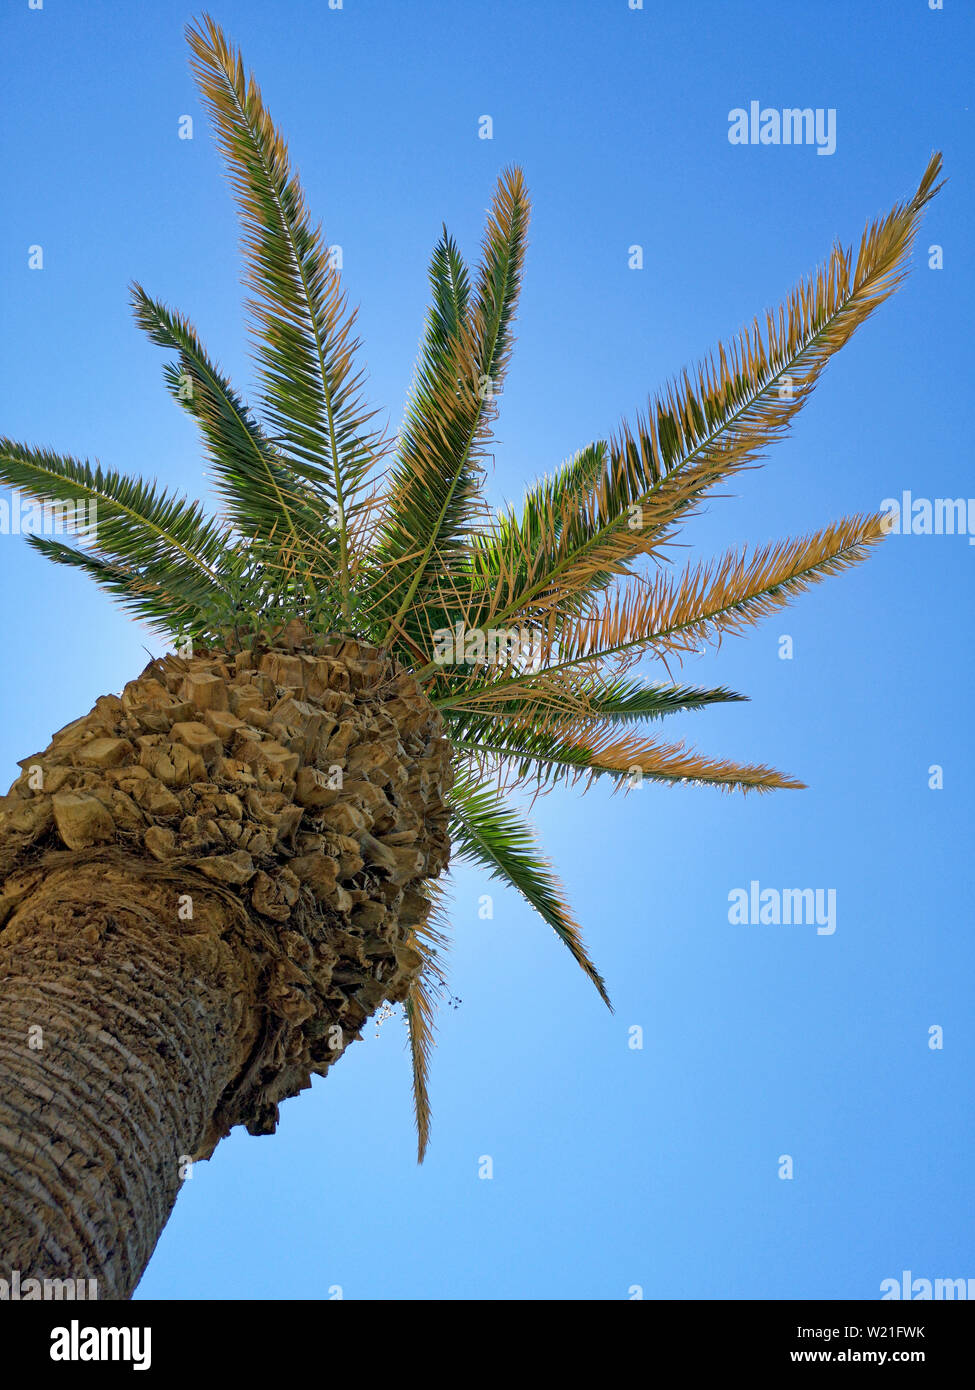 Palm tree come un dispensatore di ombra nella parte anteriore della soleggiata cielo blu, girato da sotto Foto Stock